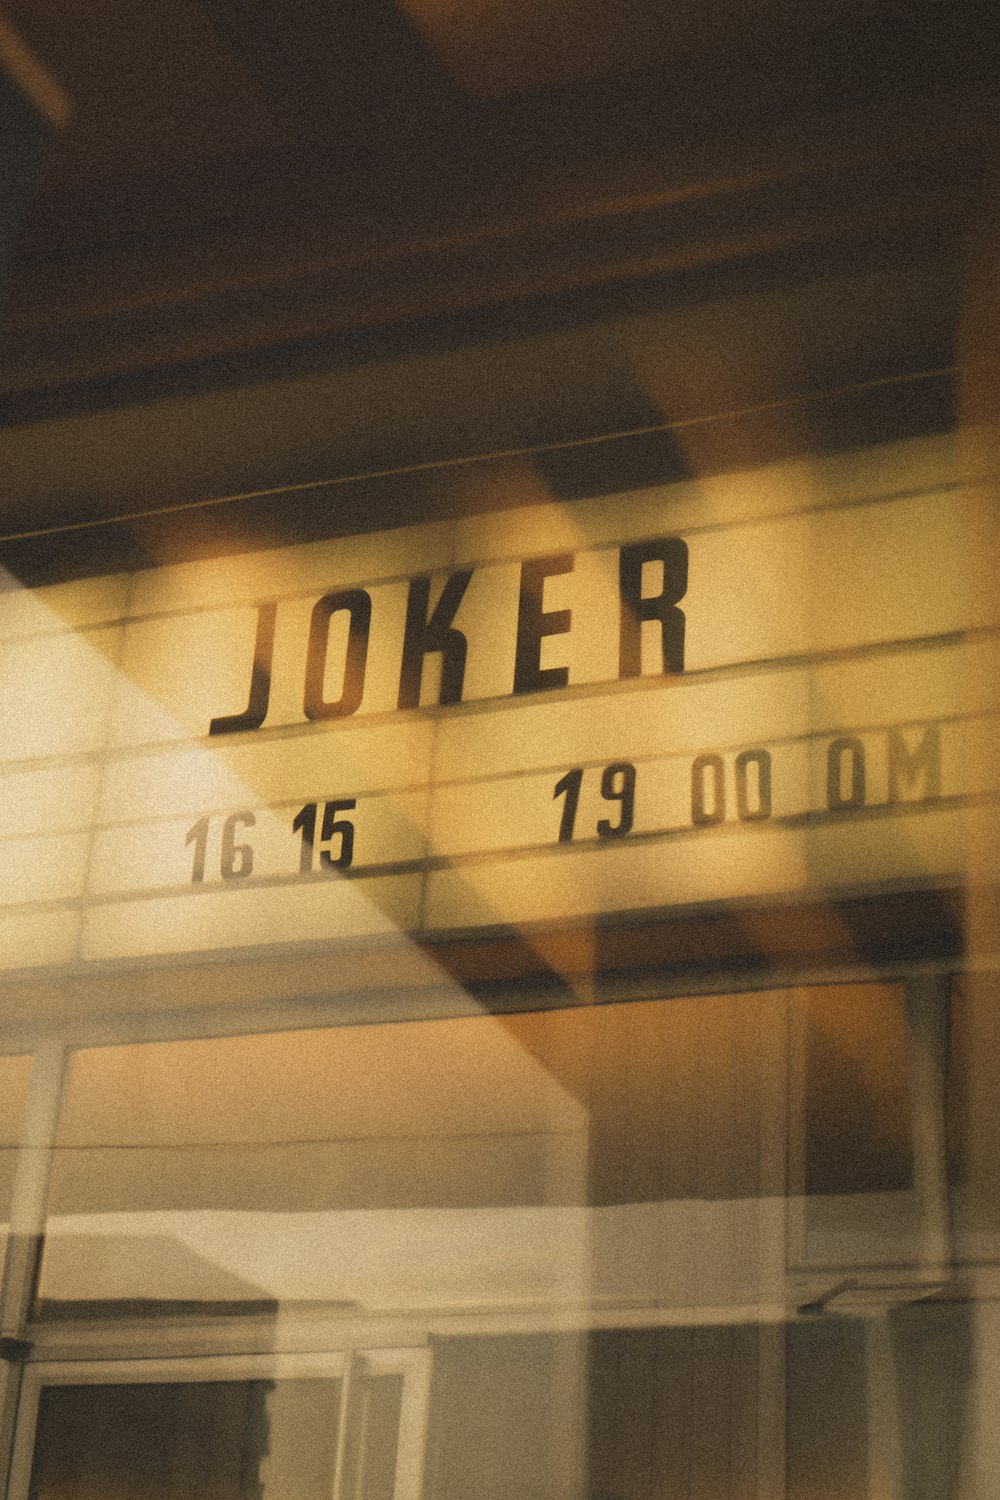 Joker 16 15 19 00 0M sign